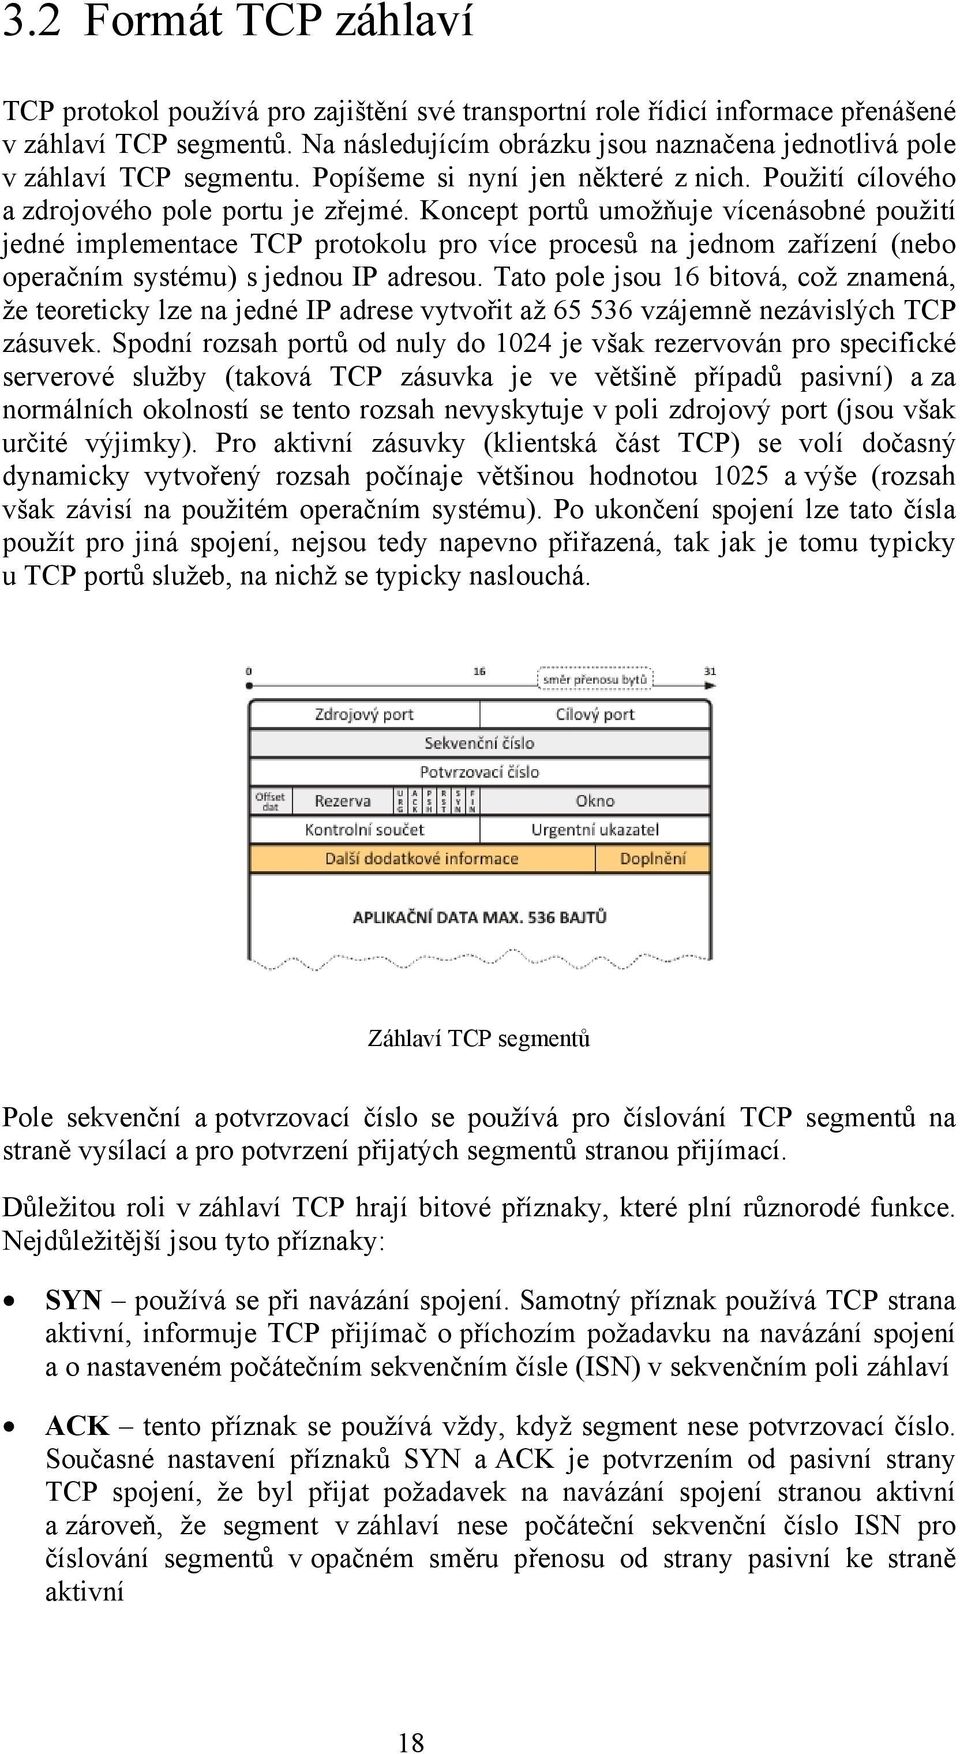 Koncept portů umožňuje vícenásobné použití jedné implementace TCP protokolu pro více procesů na jednom zařízení (nebo operačním systému) s jednou IP adresou.